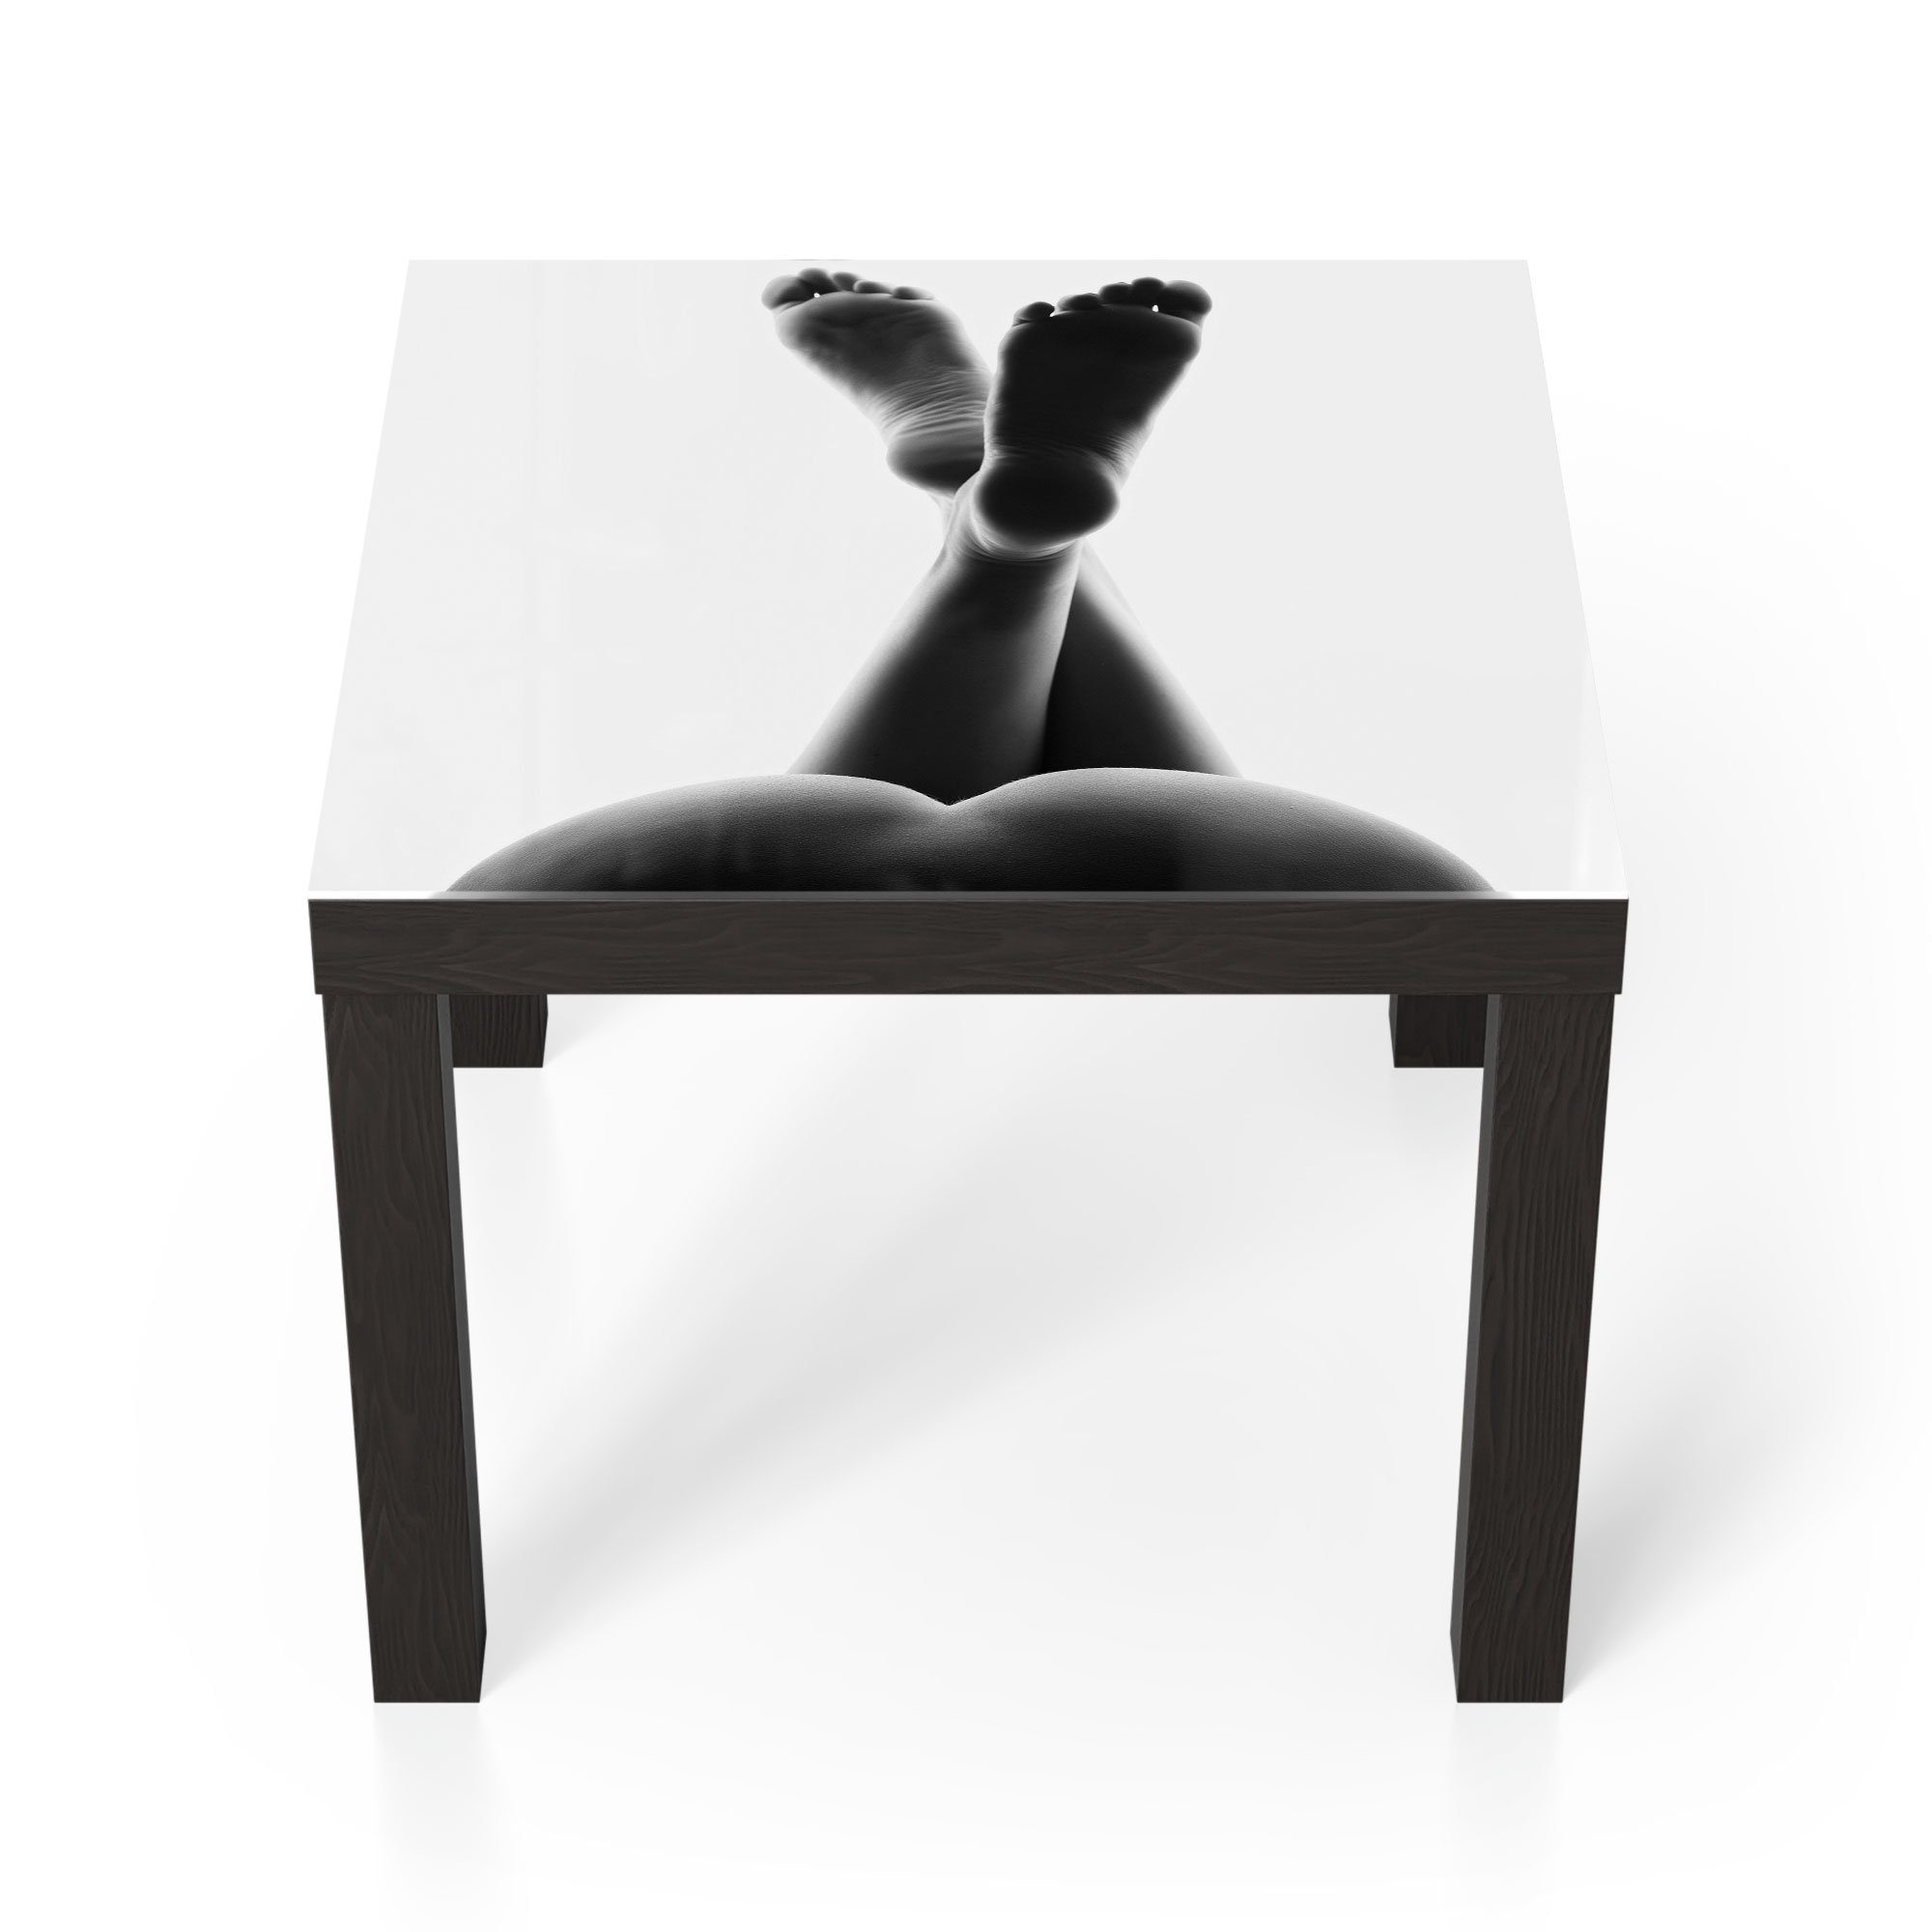 DEQORI Couchtisch 'Weibliche, nackte Beine', Glas Beistelltisch Glastisch modern Schwarz